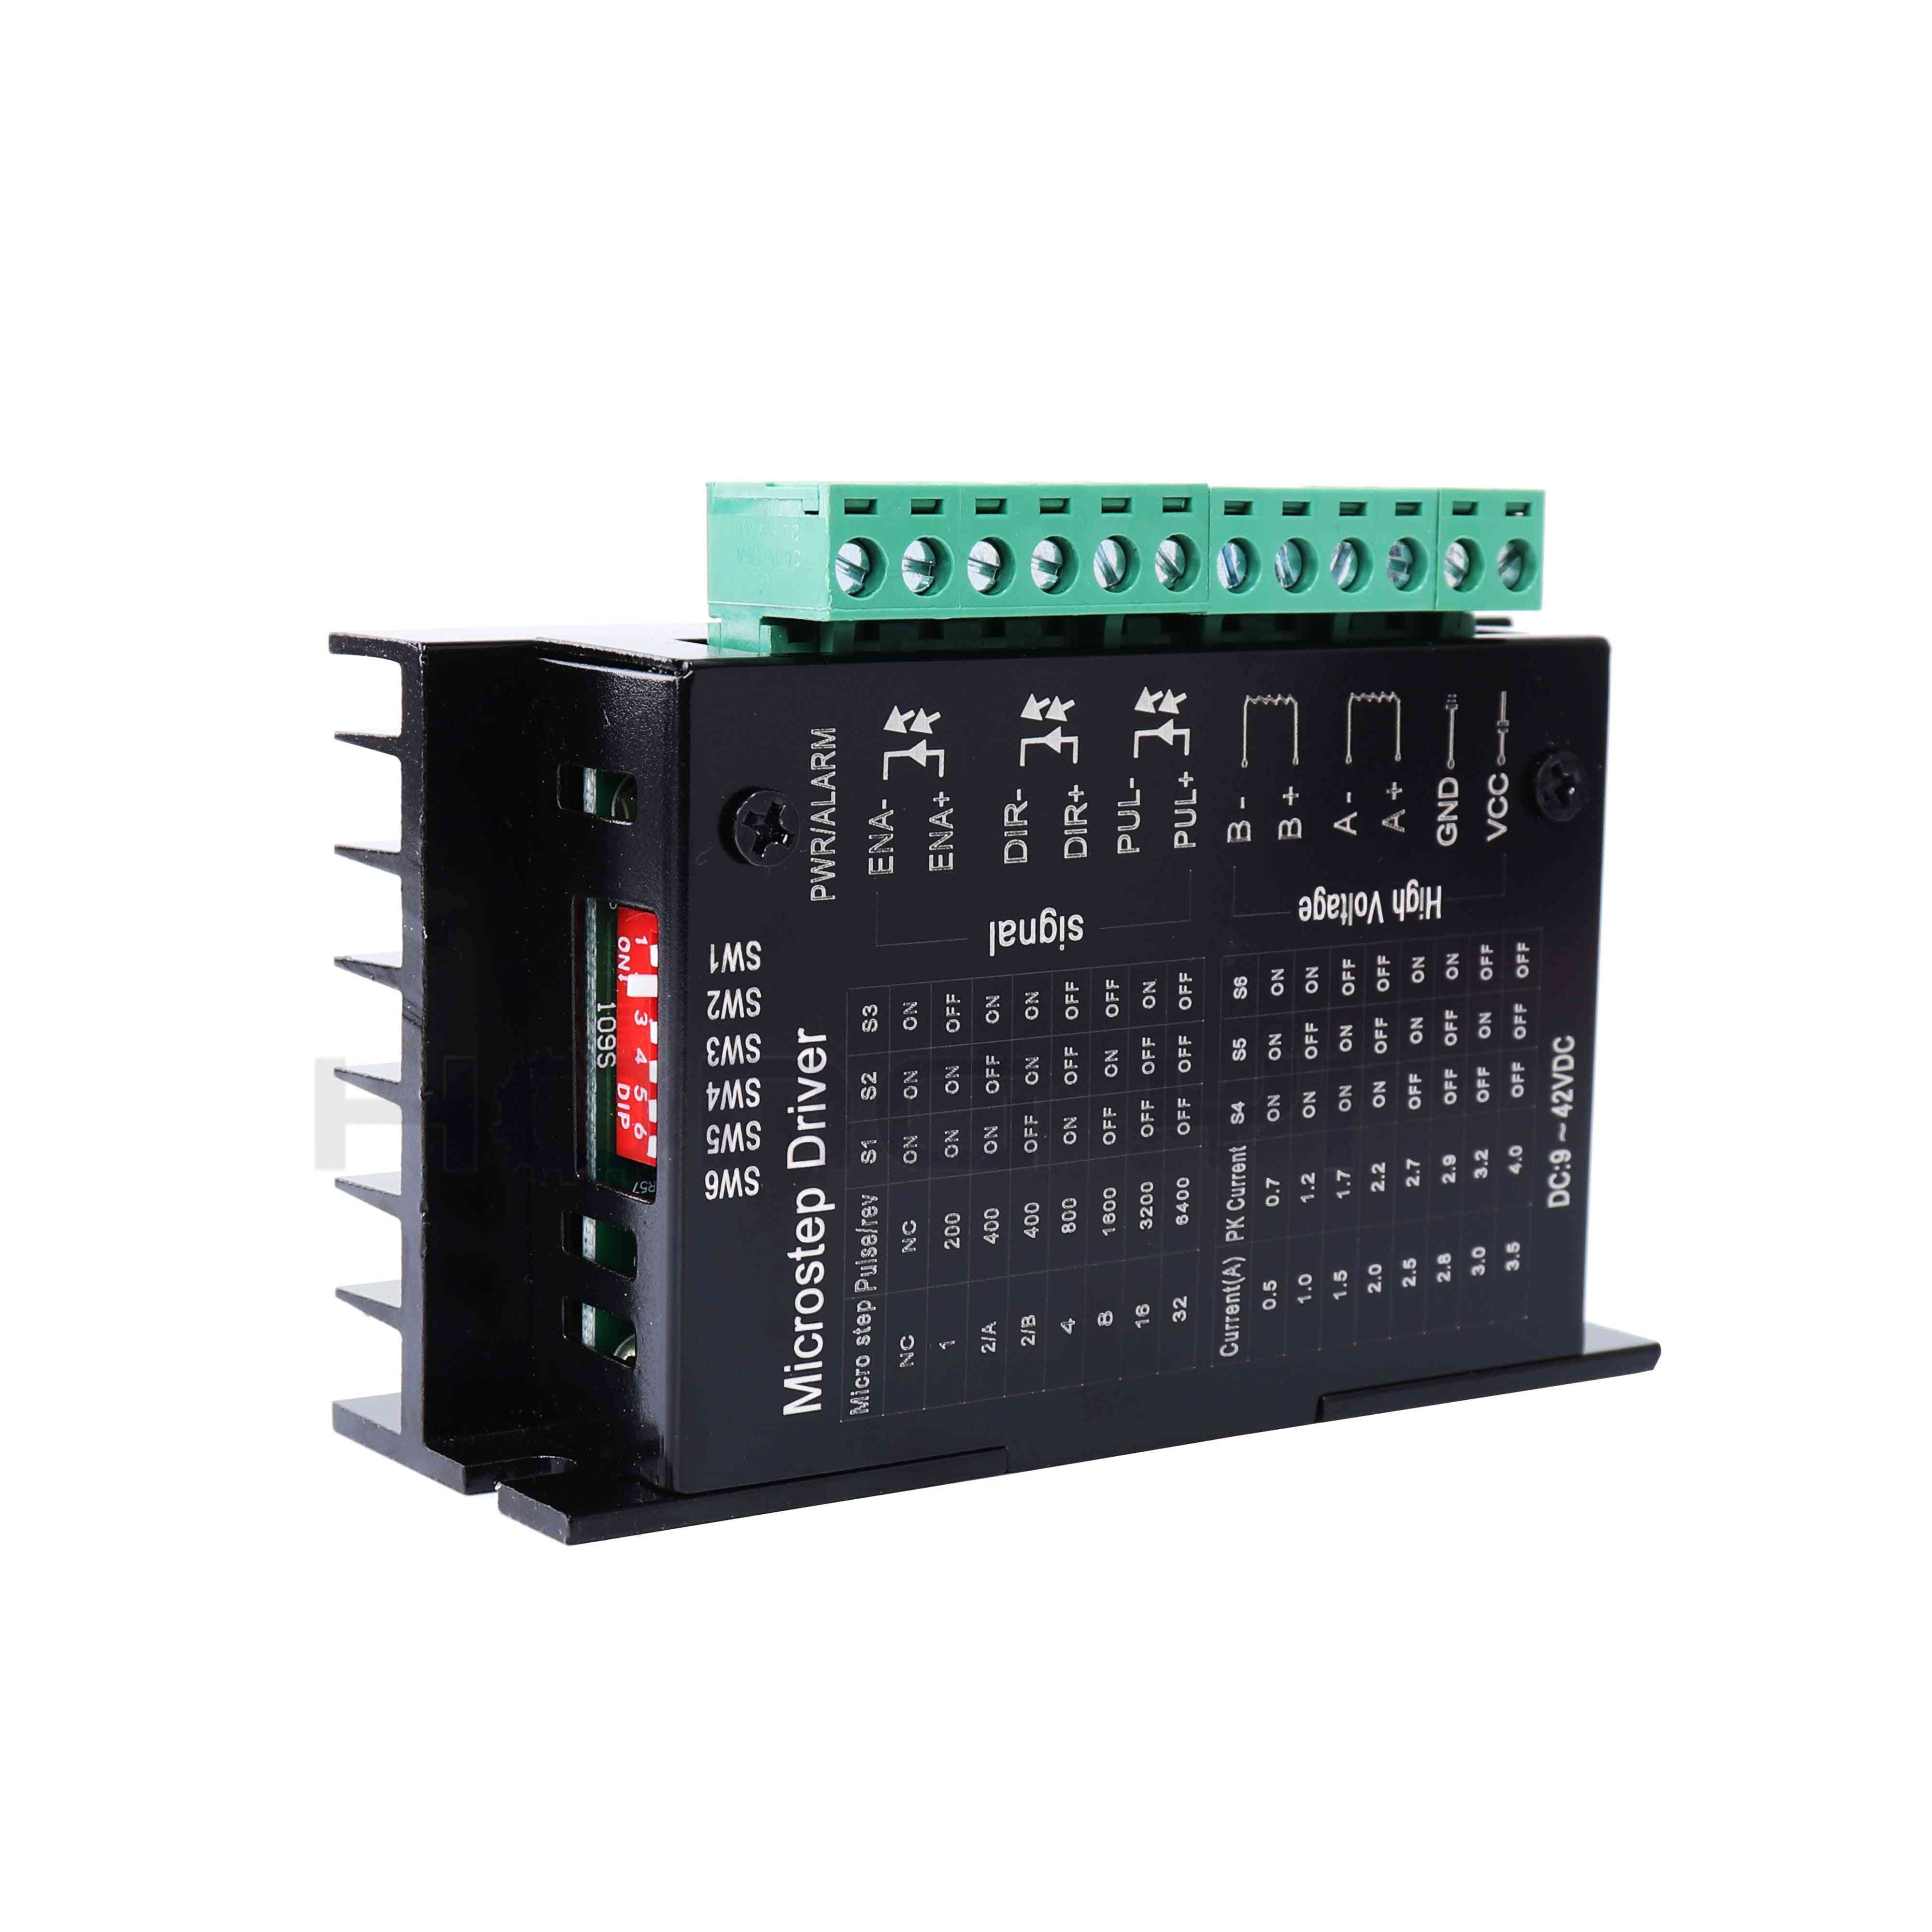 Tb6600 Upgrade Schrittmotor Treiber- s109aftg für nema23 Motor, 2-Phasen 4a CNC Router Controller für 3D-Drucker - tb6600 x1pcs